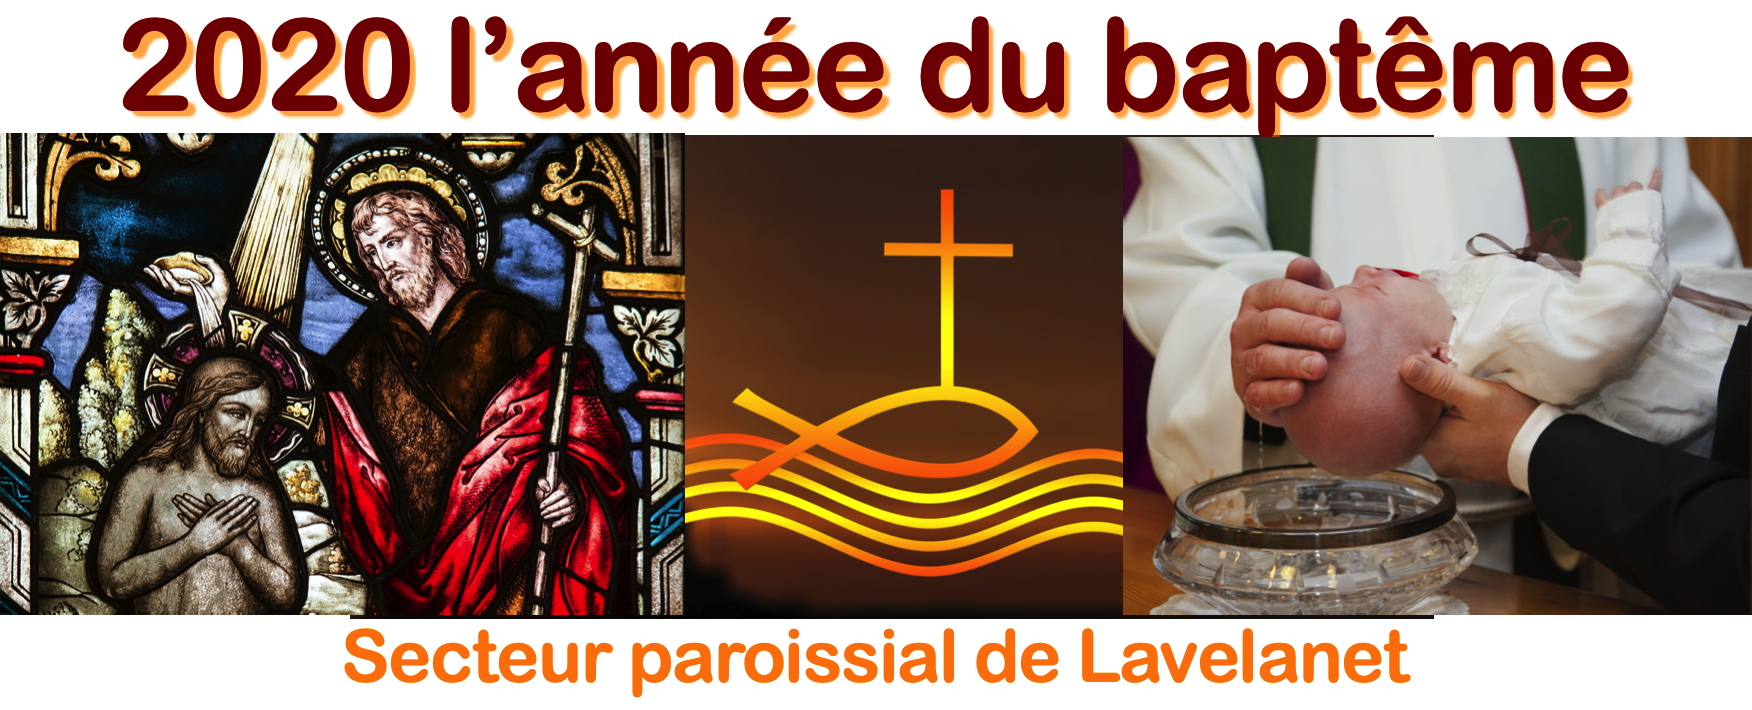 L’année pastorale du baptême…